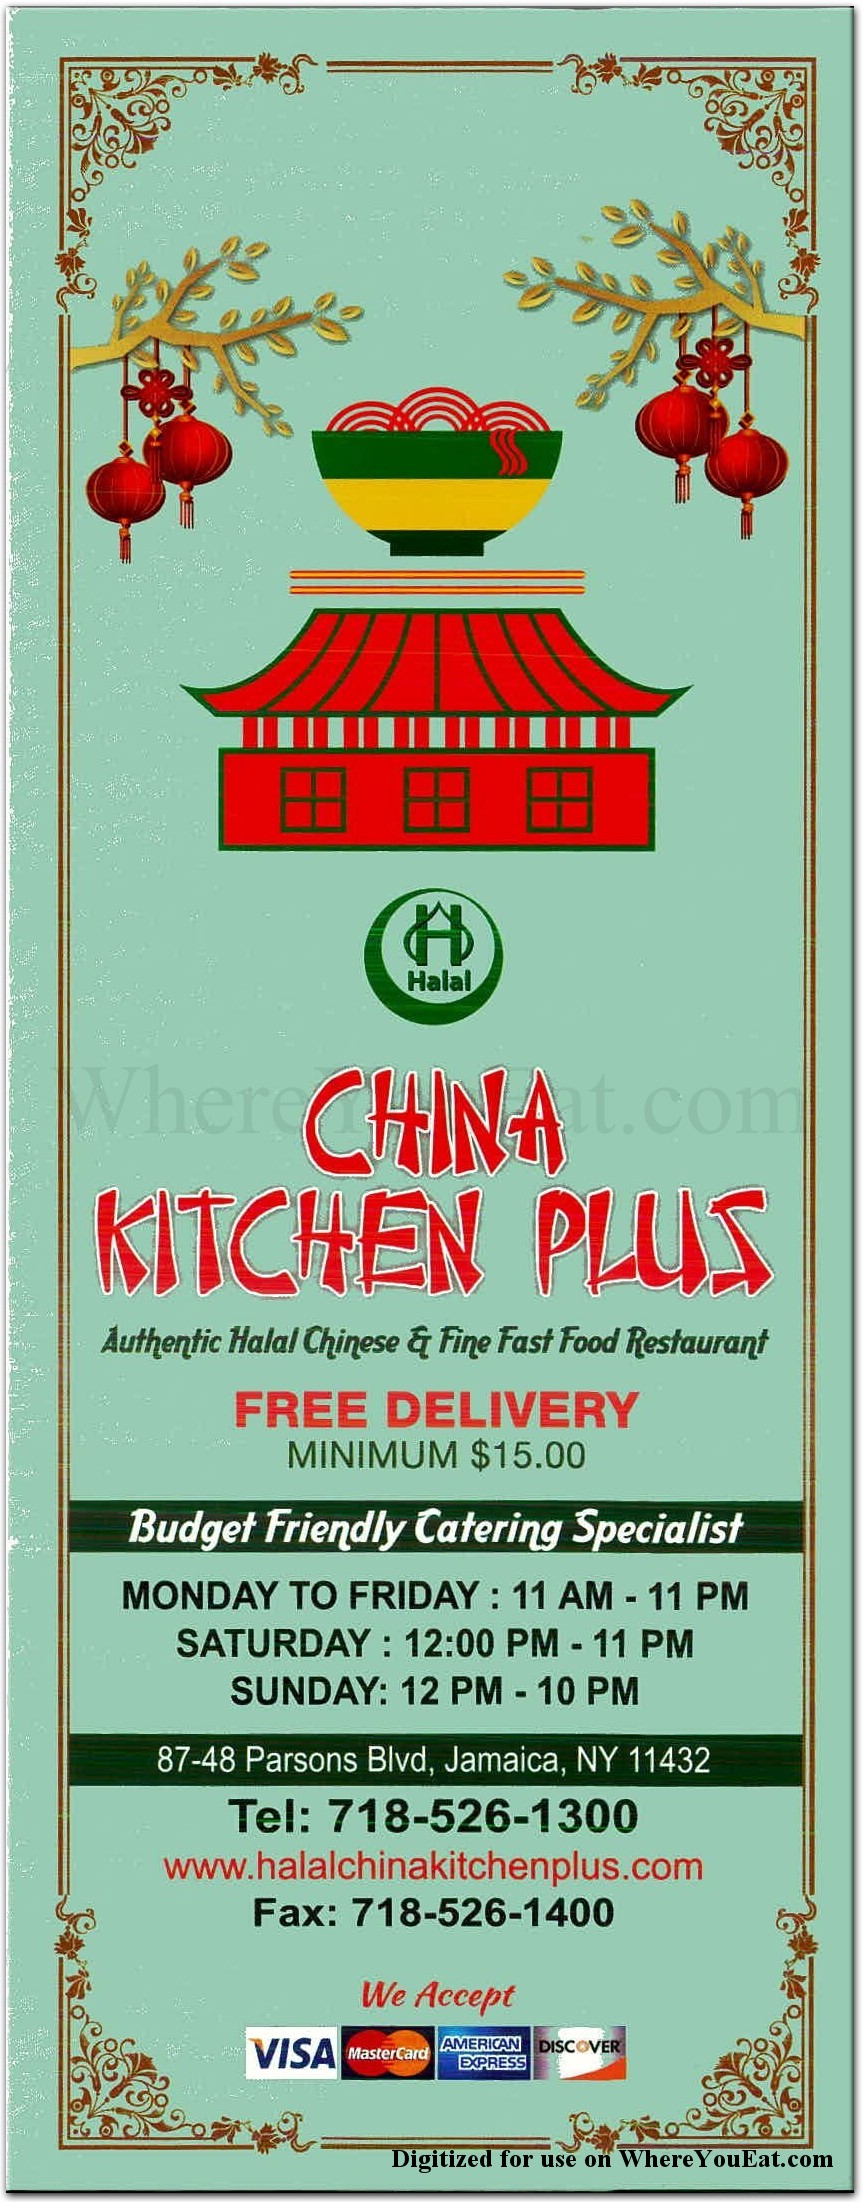 CHINA KITCHEN PLUS HALAL CHINESE FAST FOOD 11 